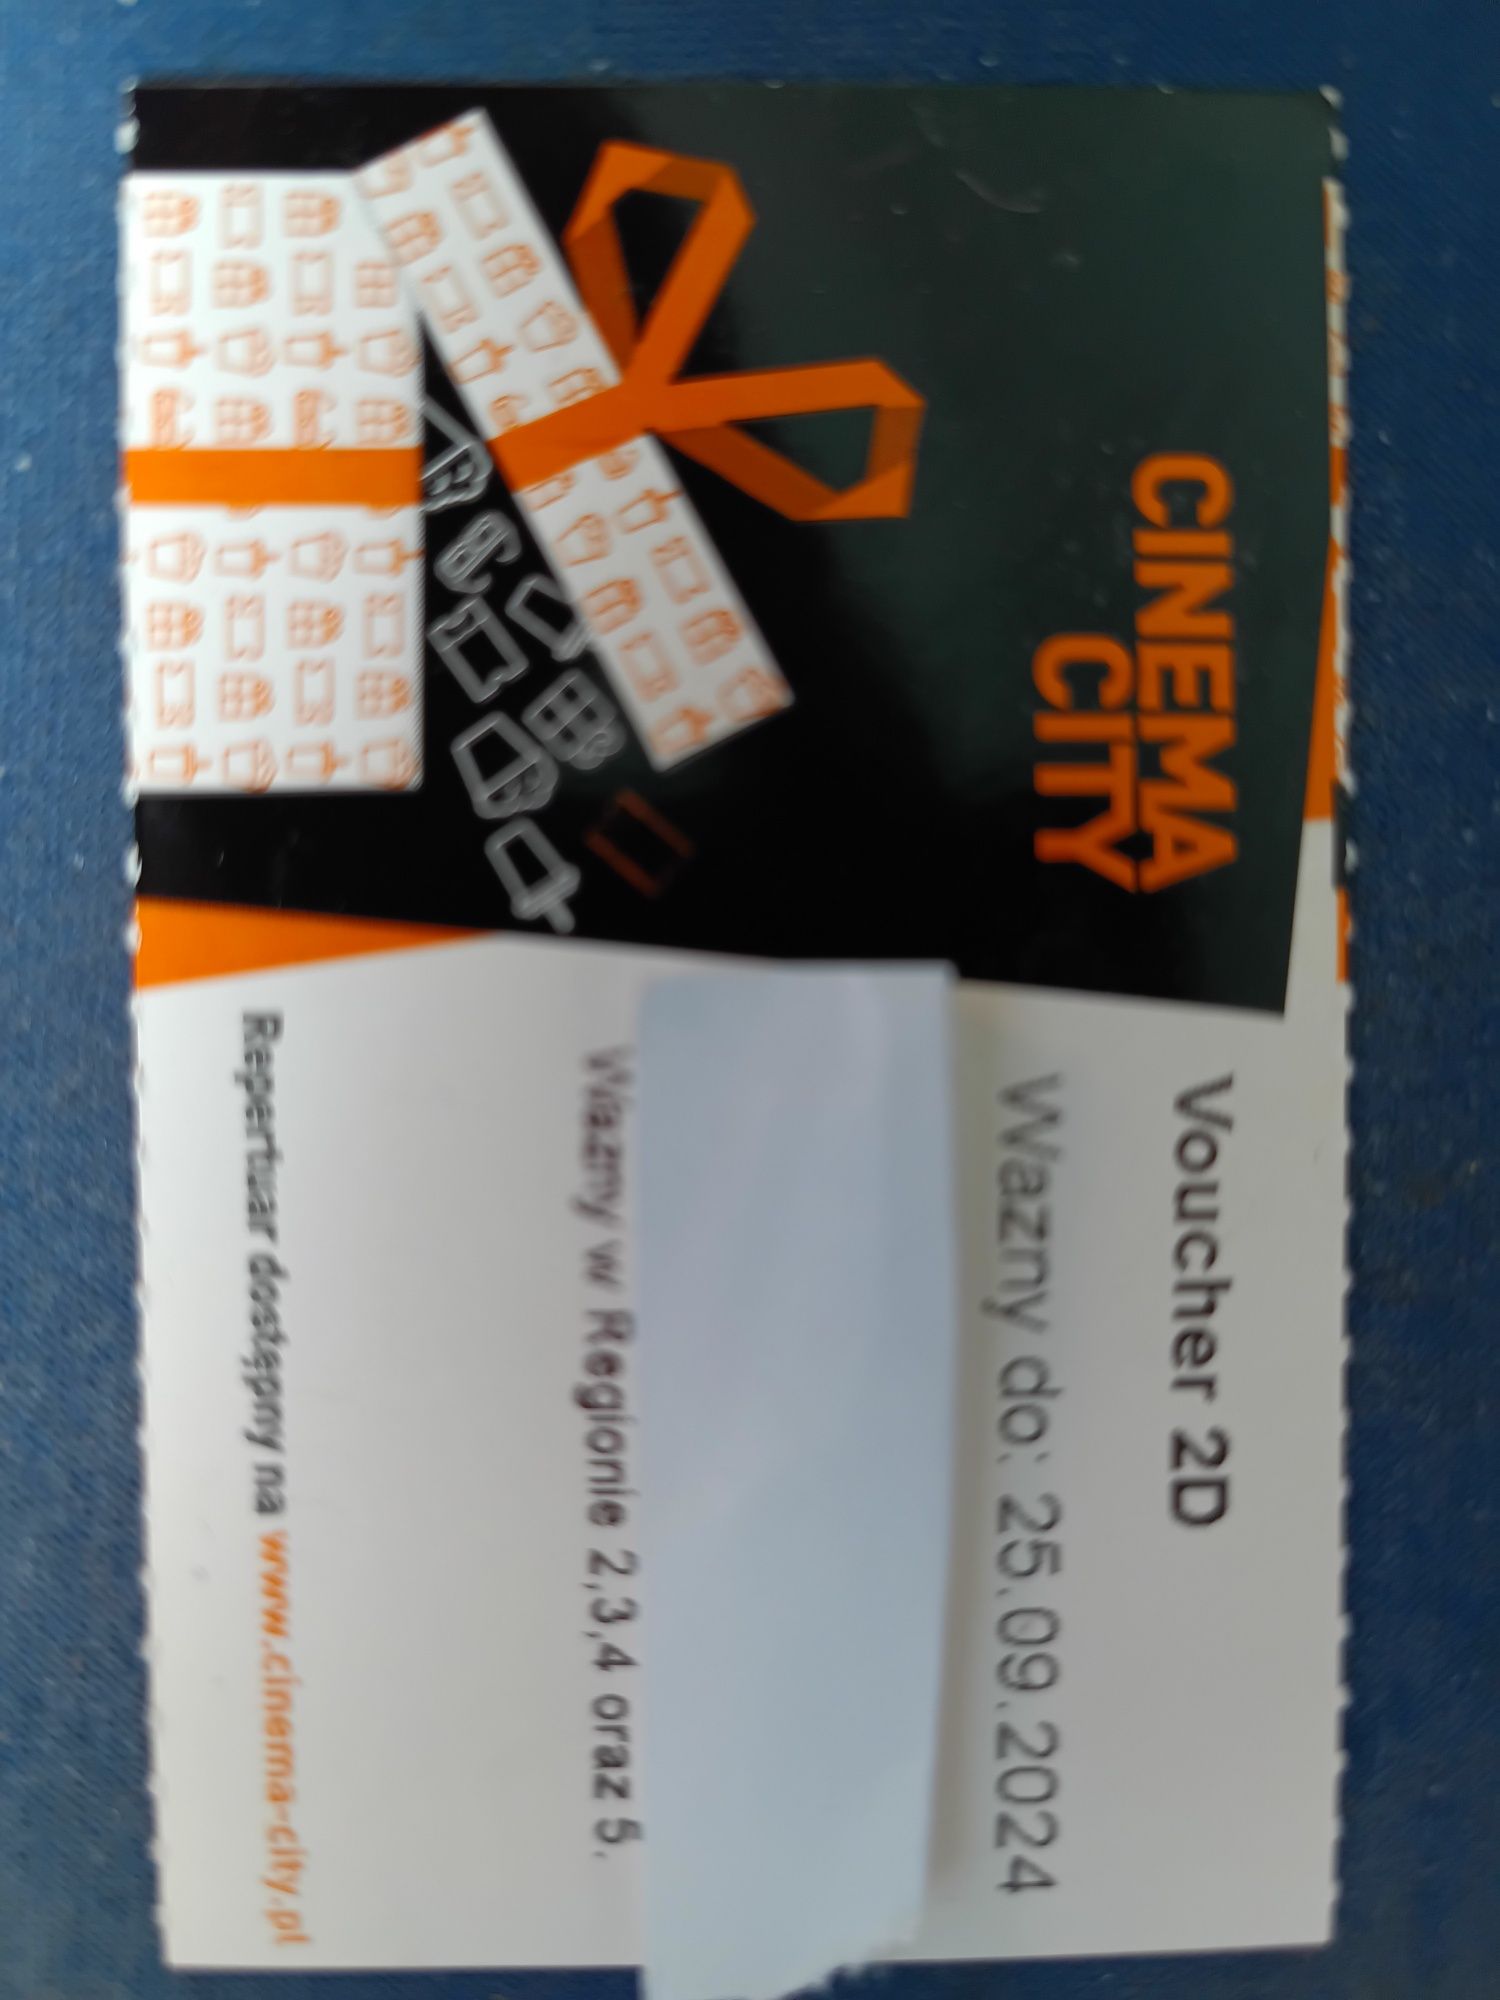 Cinema City bilet kod voucher 2D wszystkie dni - region 2, 3, 4, 5